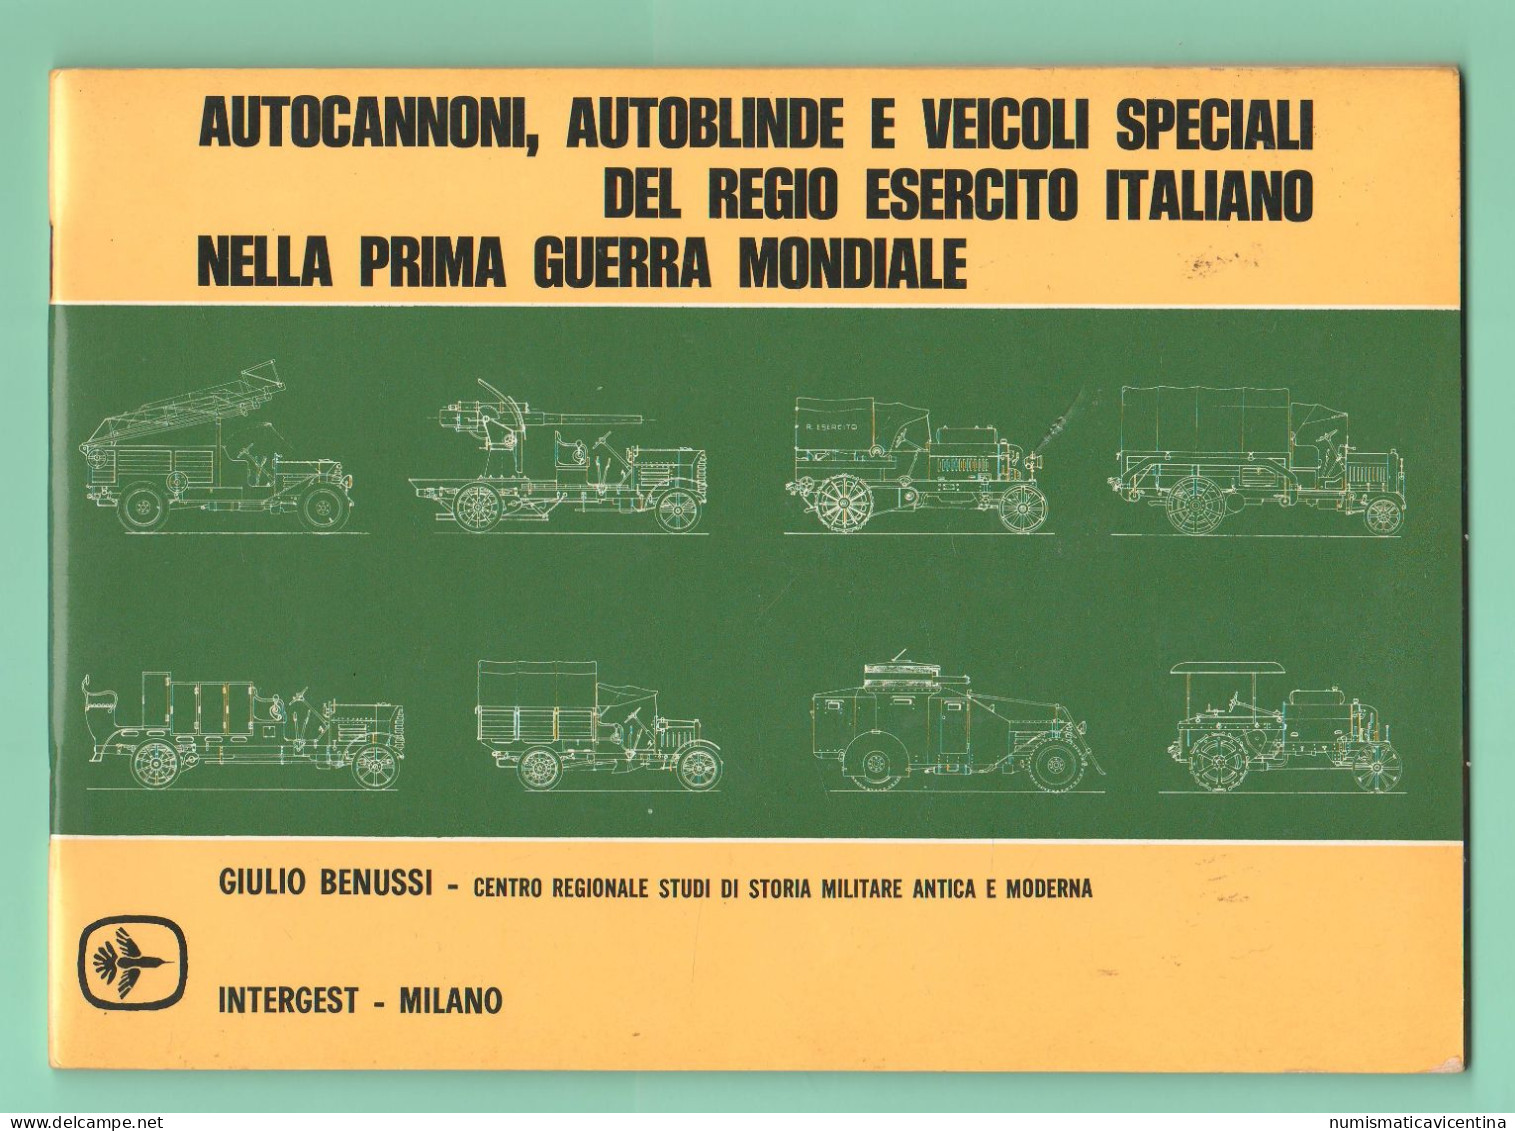 Regio Esercito Libro Autoblindo Autocannoni Veicoli Speciali Nella Prima Guerra Mondiale Military Vehicles 1st WW - Italian